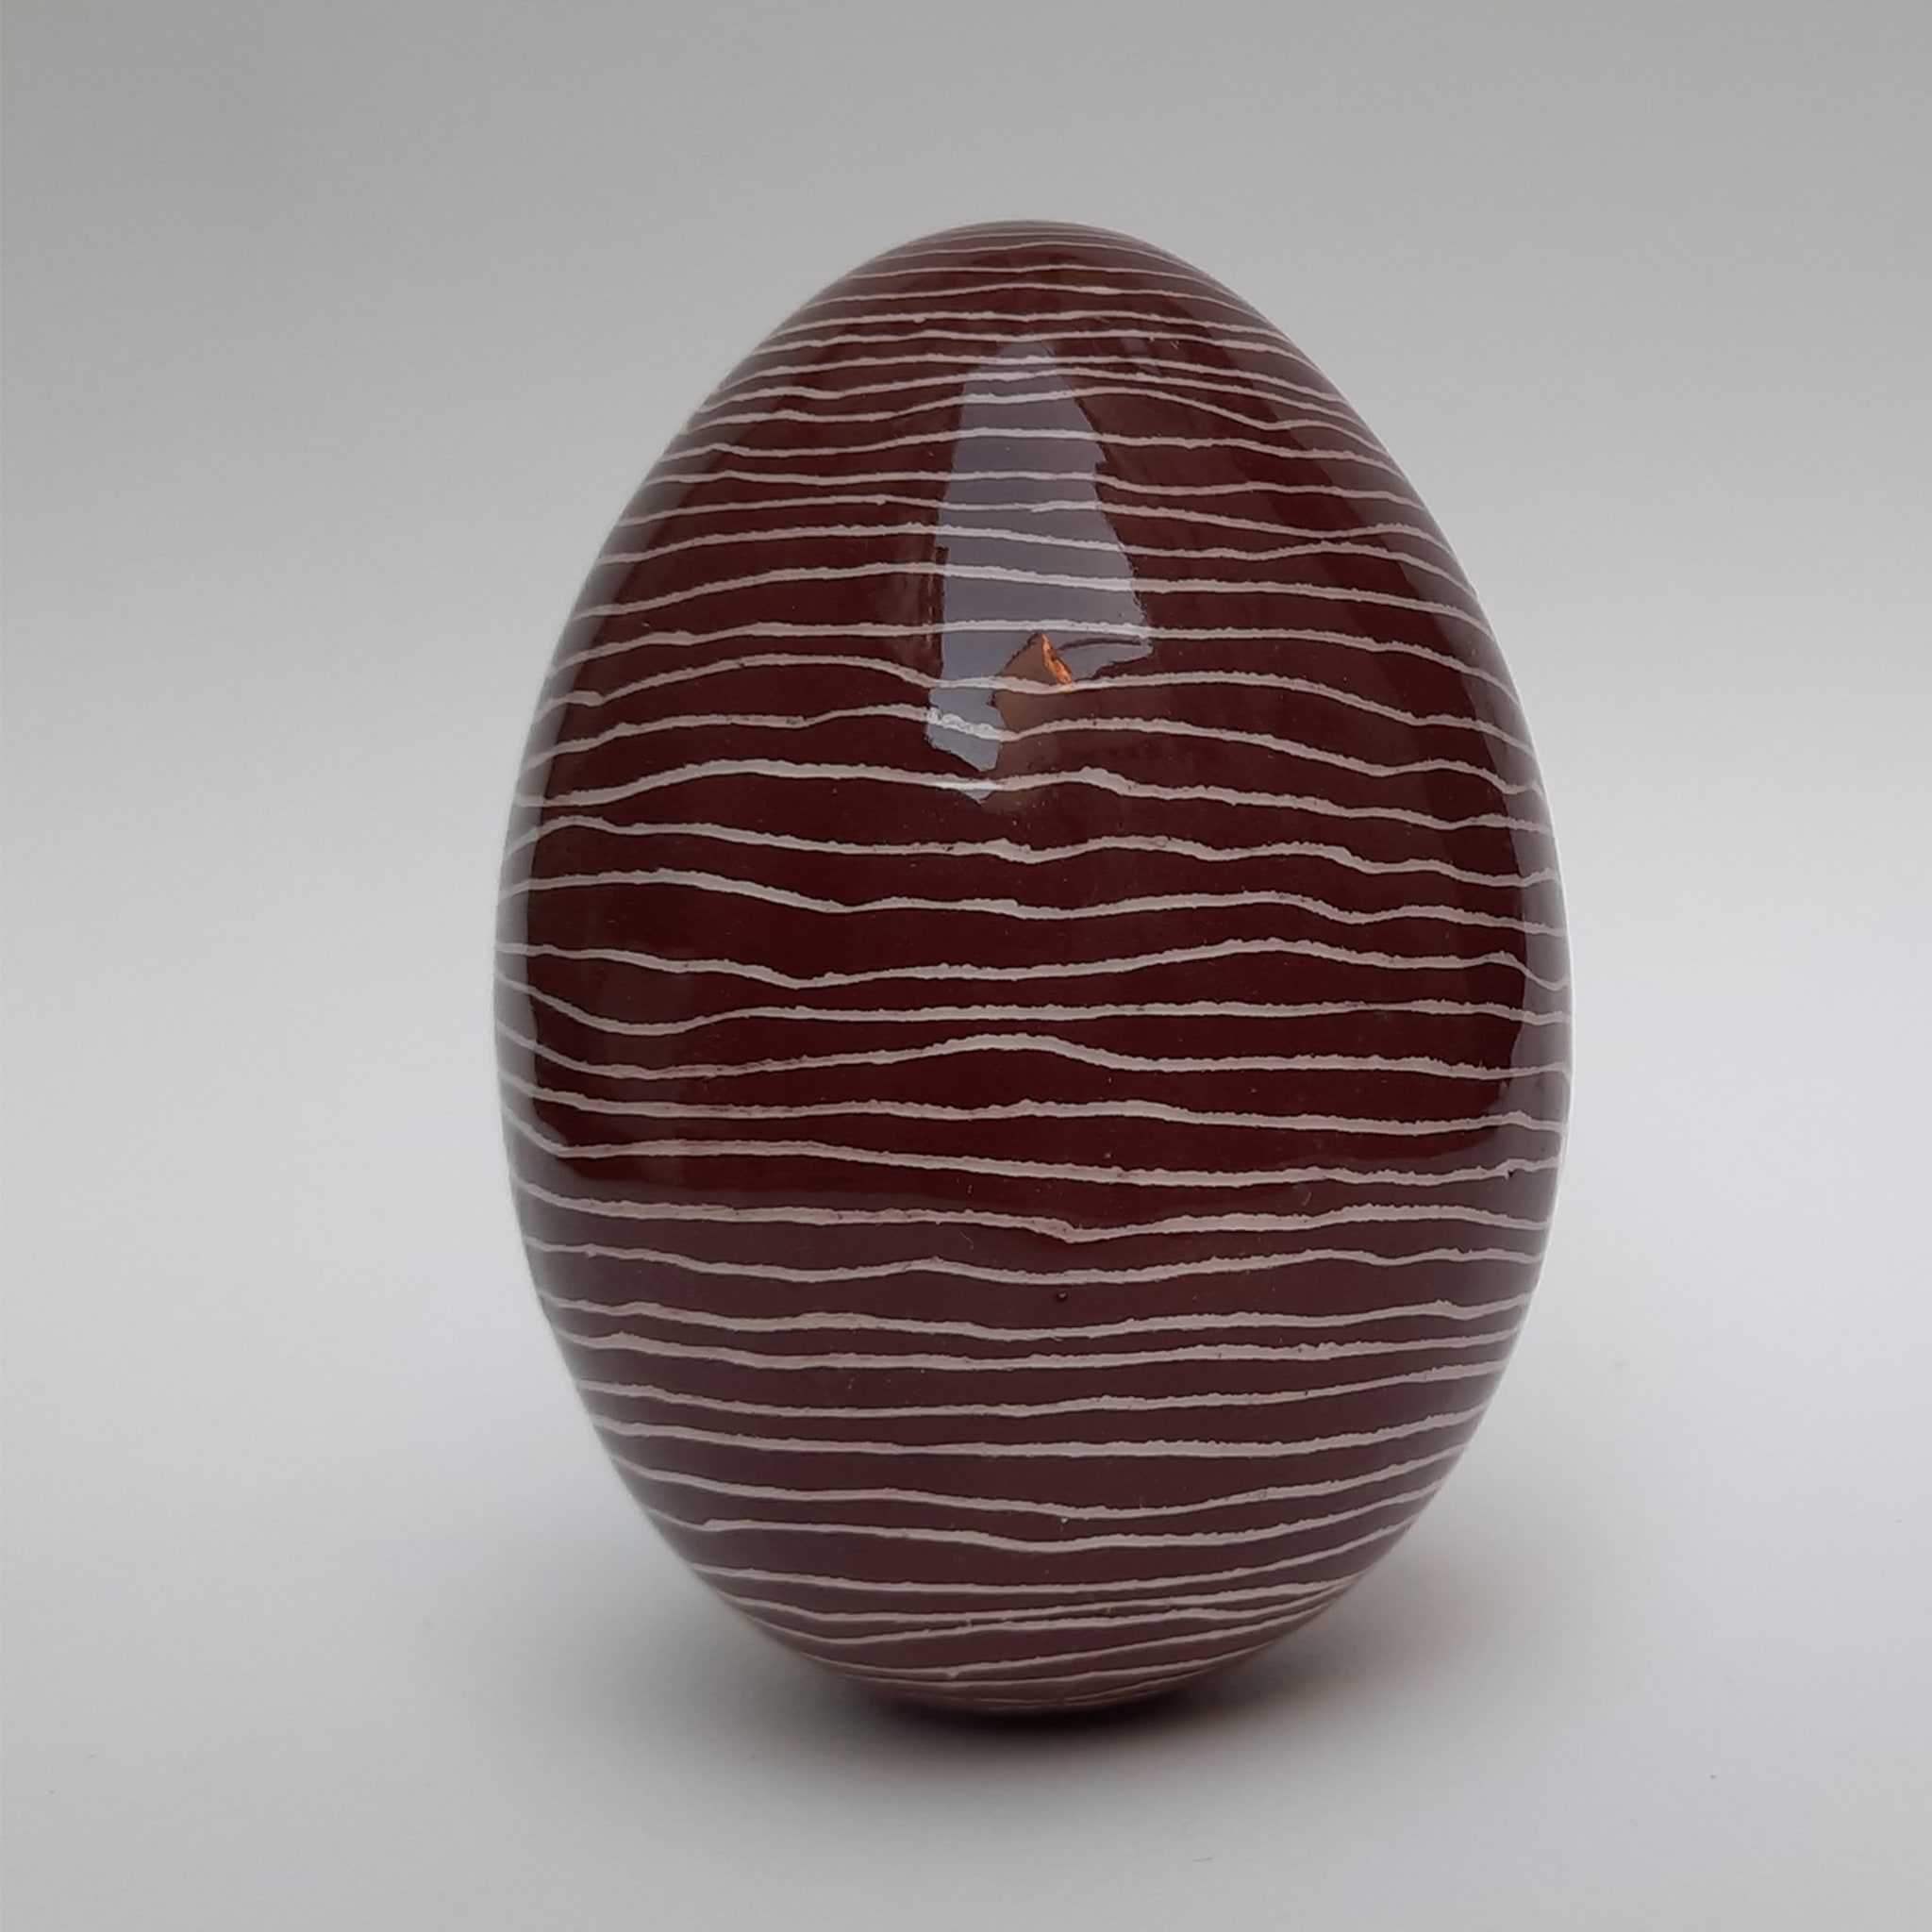 Se Questo E' Un Uovo Brown Decorative Egg - Alternative view 1